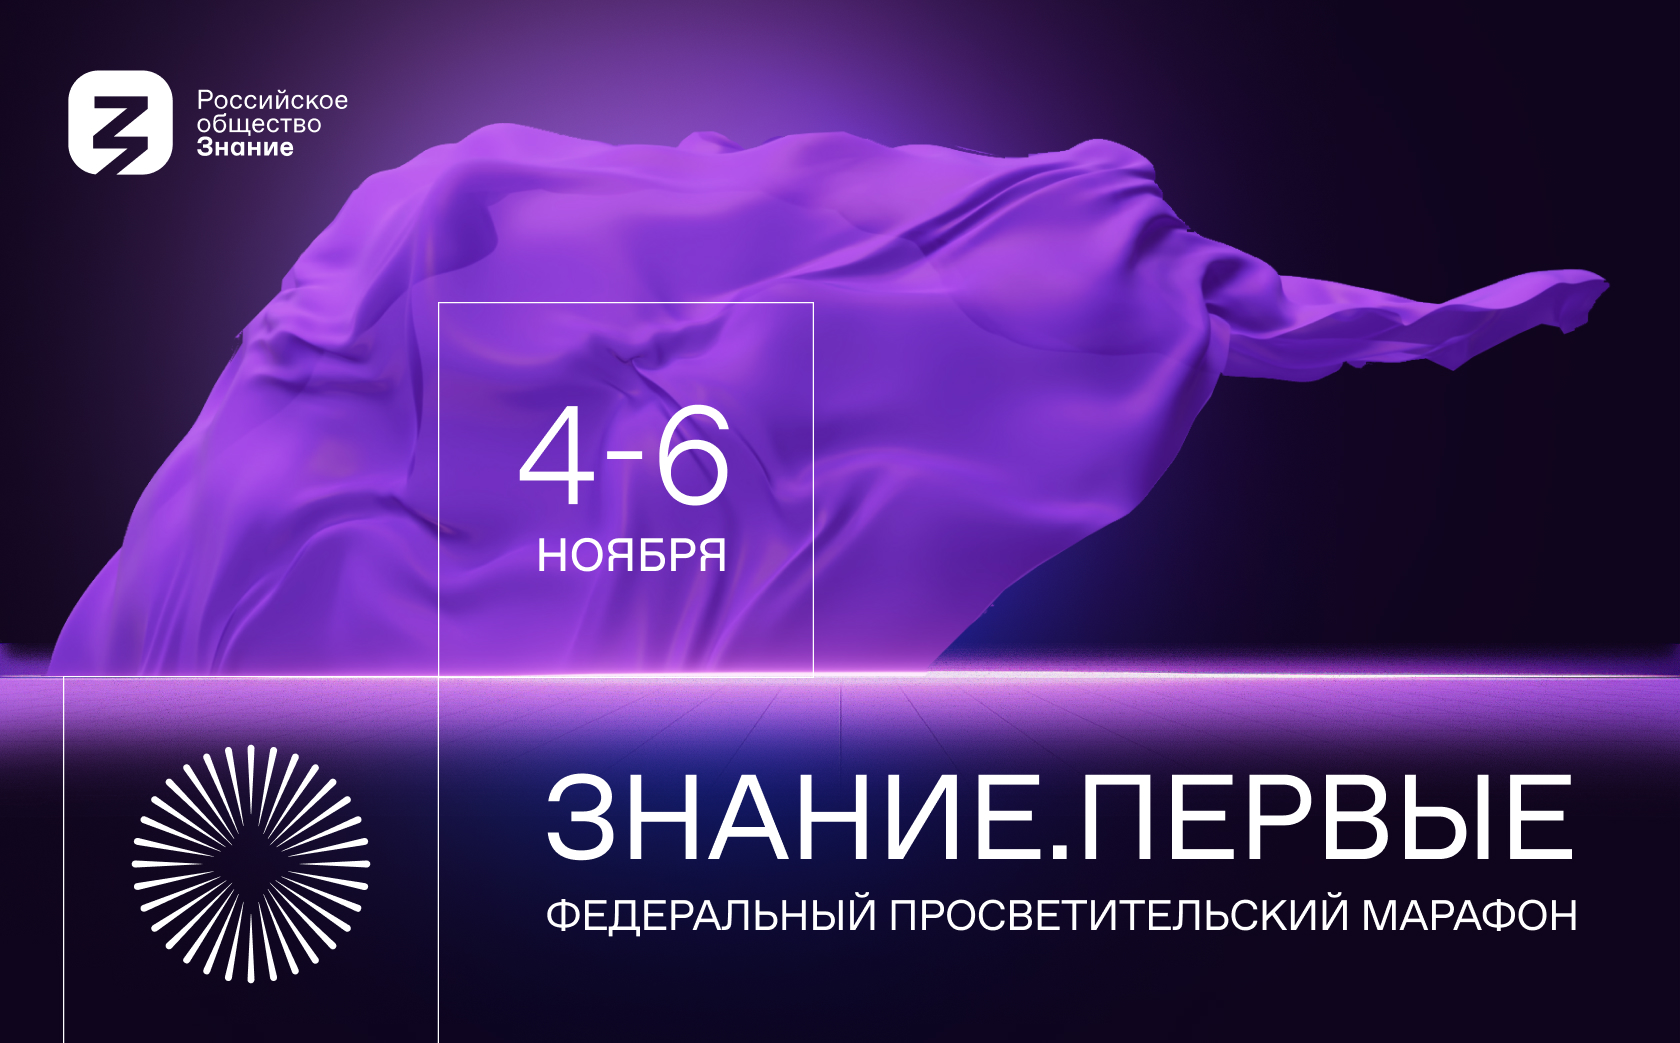 Федеральный просветительский марафон Российского общества «Знание» — Знание.Первые состоится с 4 по 6 ноября 2023 года.